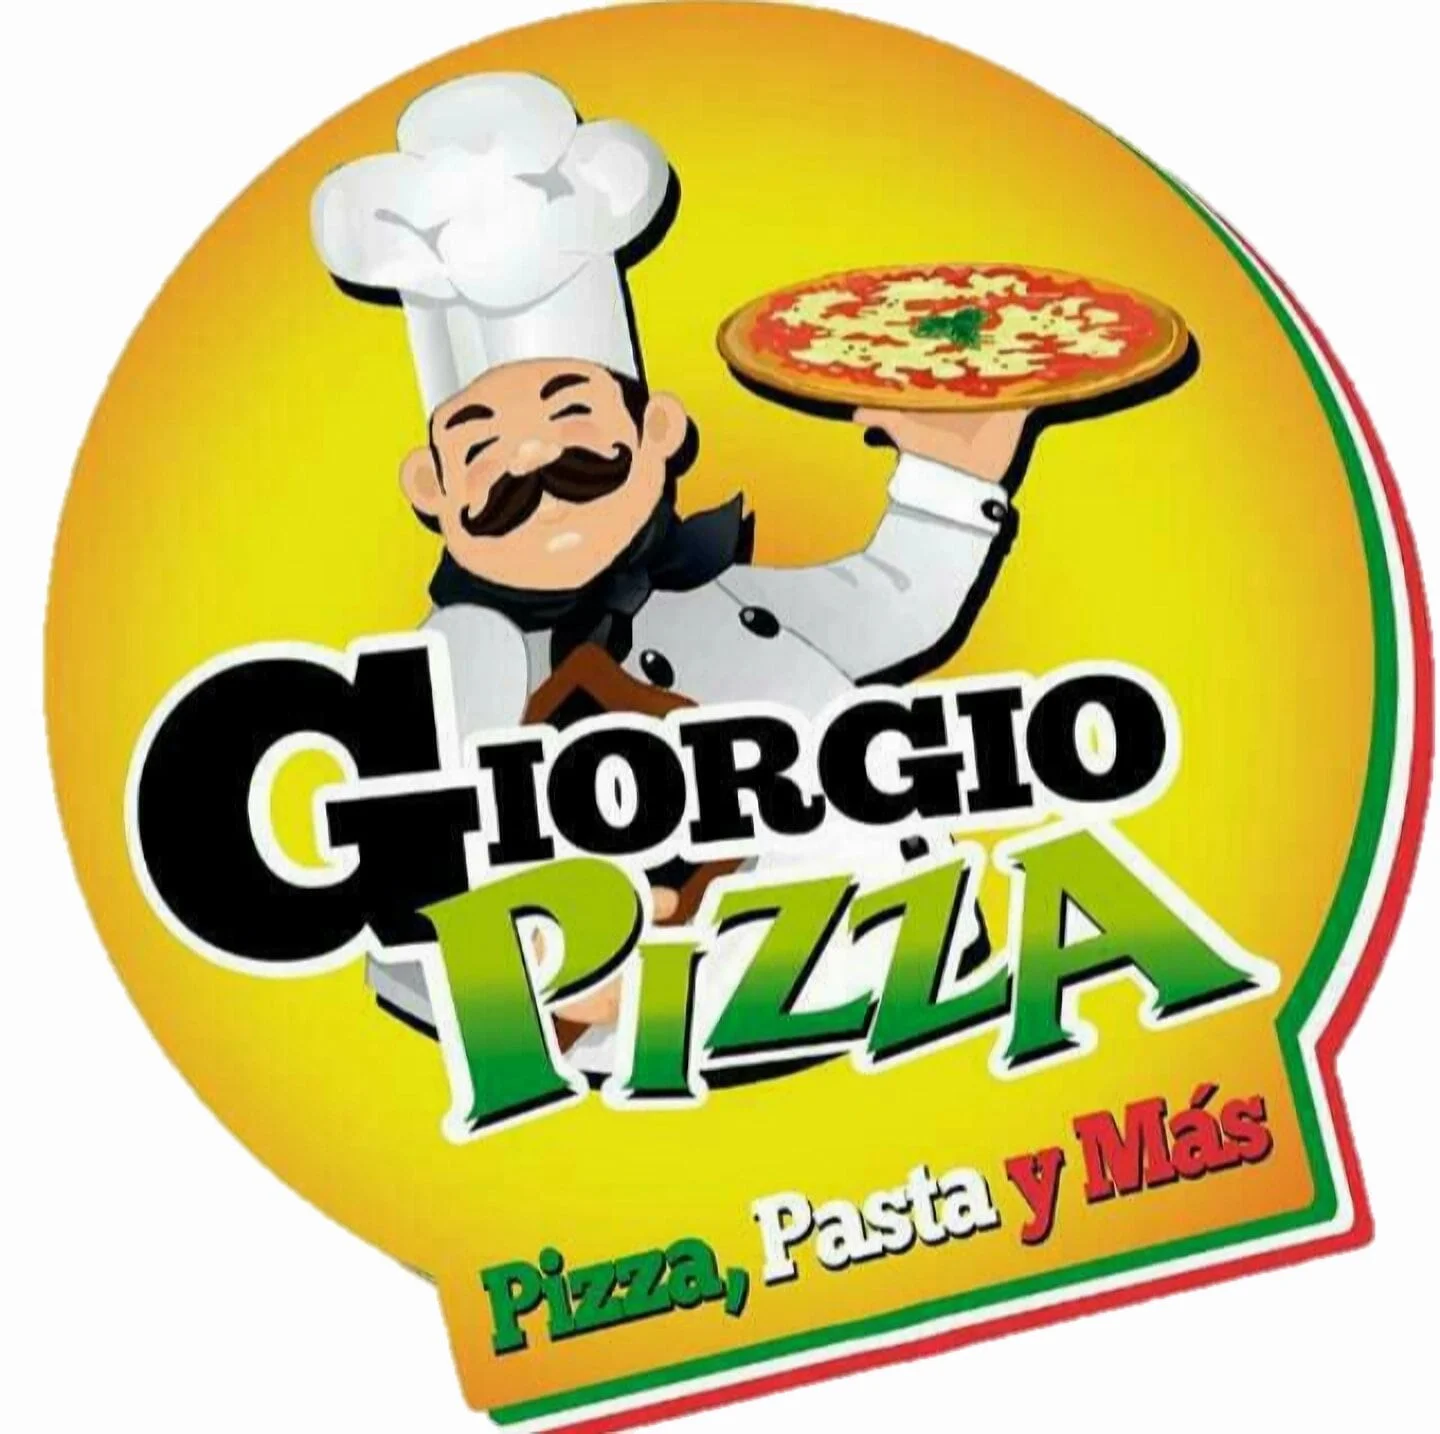 Restaurante-giorgio-pizza-24566